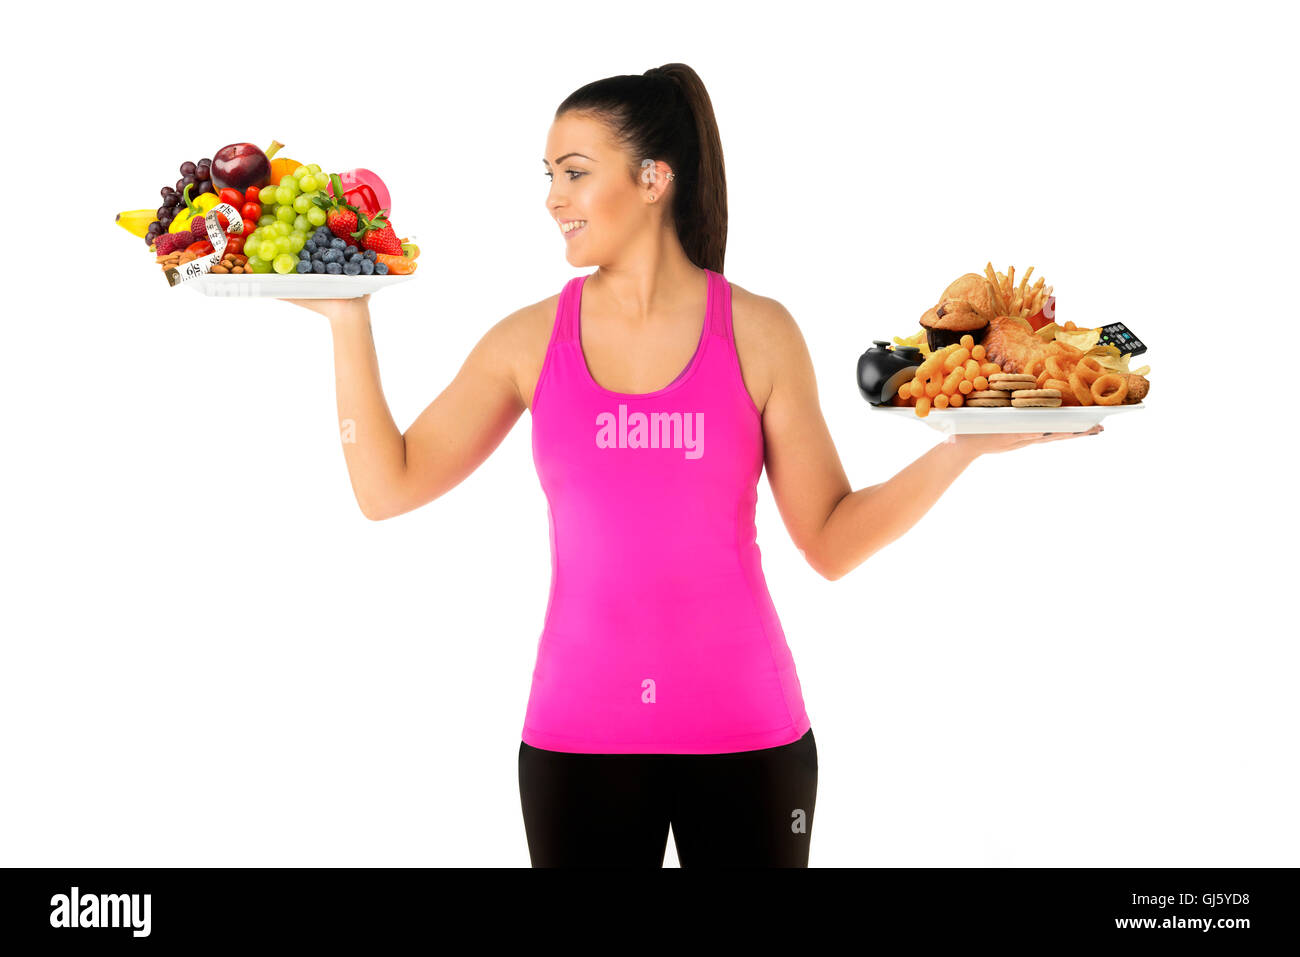 Gesunde oder ungesunde Lebensweise Konzept junge Frau mit zwei Platten von Lebensmitteln eine ungesunde aber suchen an gesunde Platte Stockfoto